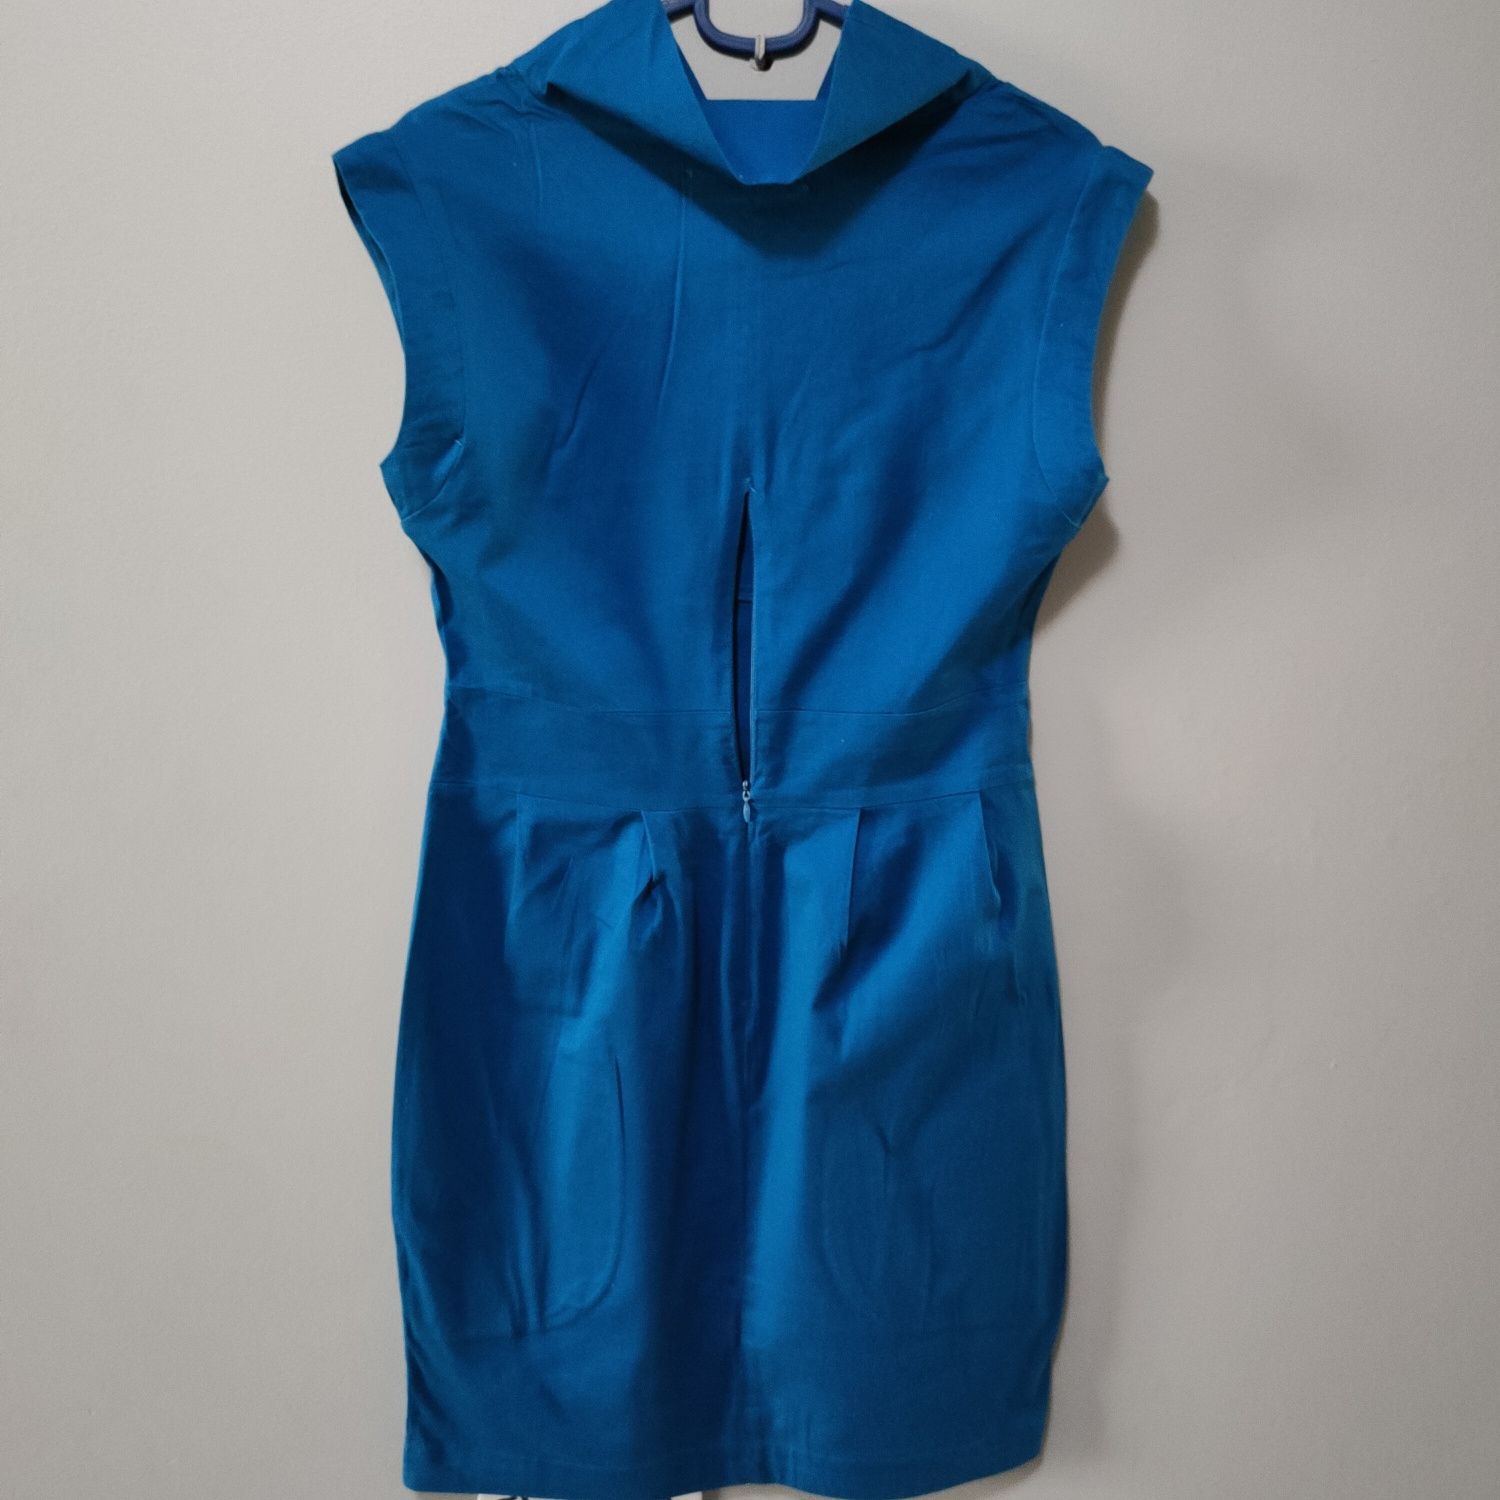 Niebieska sukienka bombka rozmiar 36